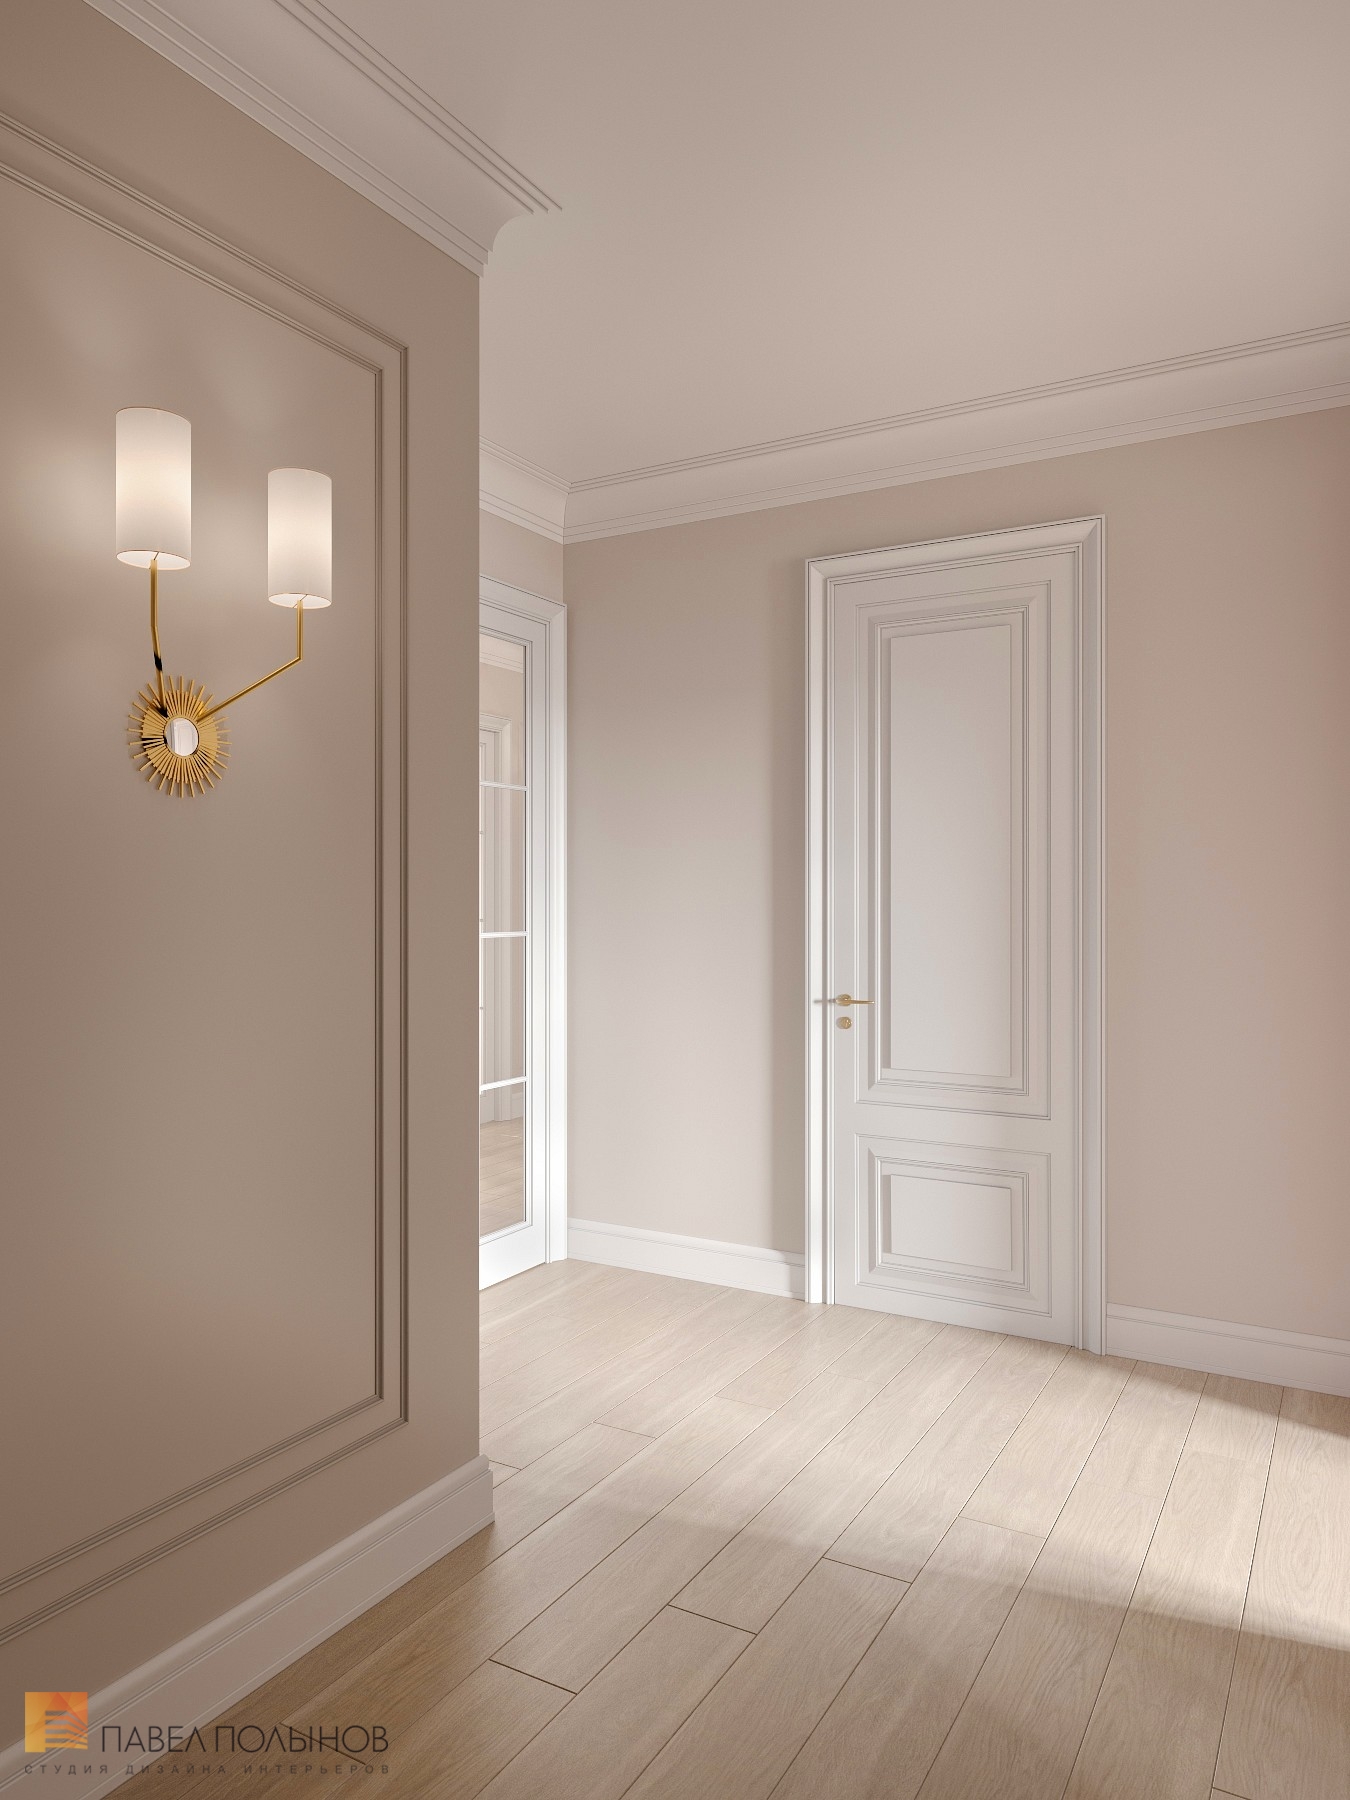 Фото дизайн интерьера холла из проекта «Интерьер квартиры в стиле современной американской классики, ЖК «Royal Park», 214 кв.м.»